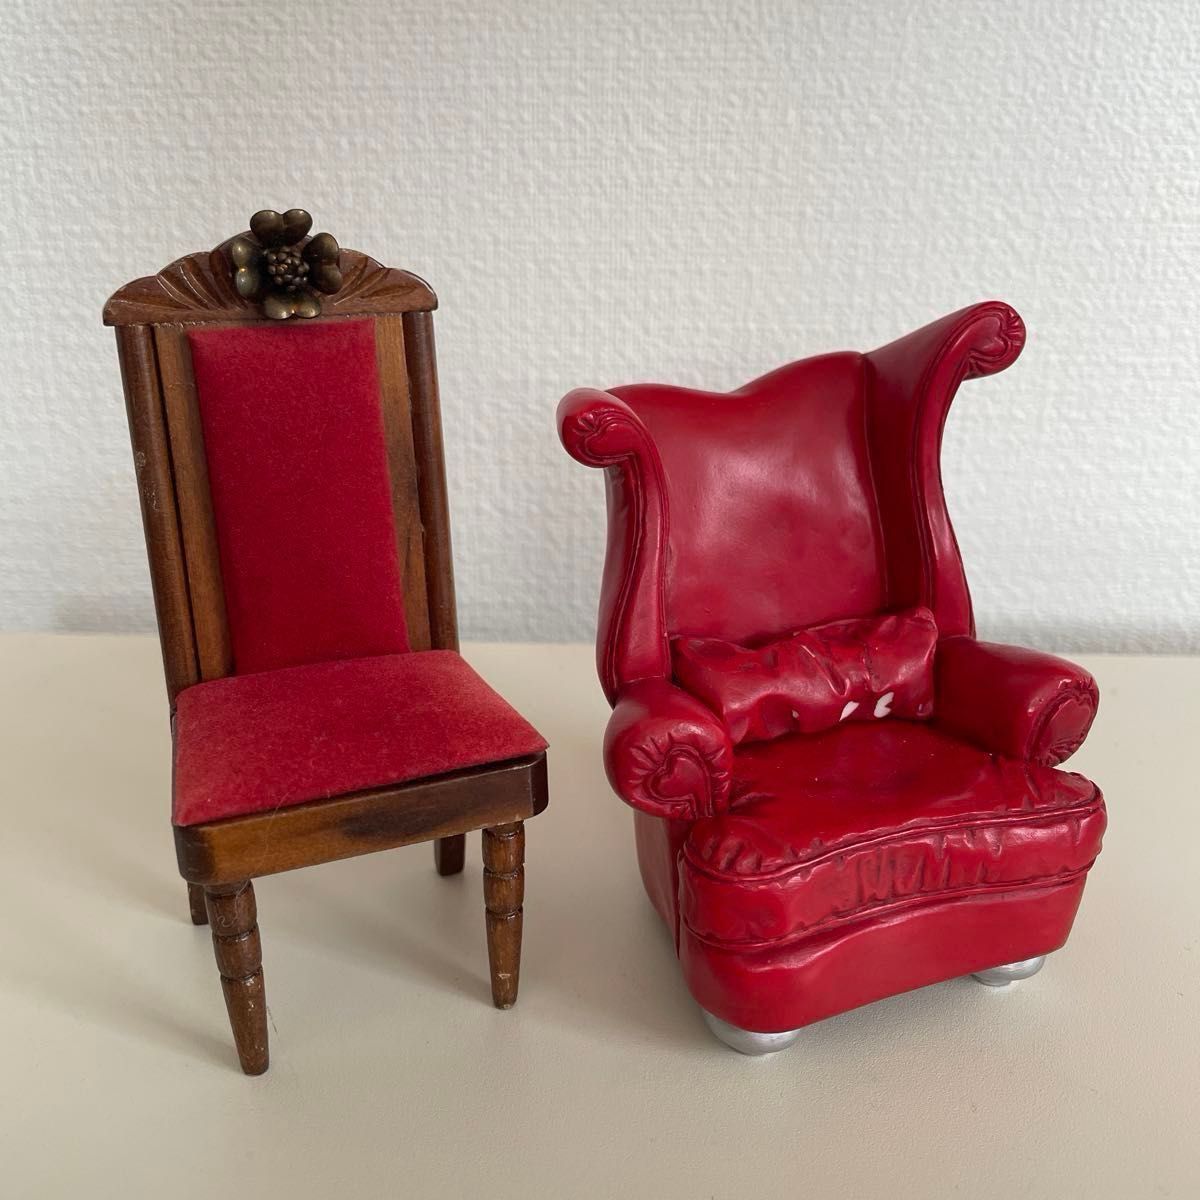 ミニチュア 椅子 × 2個セット " TAKE A SEAT " by Raine 【中古/リサイクル】チェア 置物 フィギュア